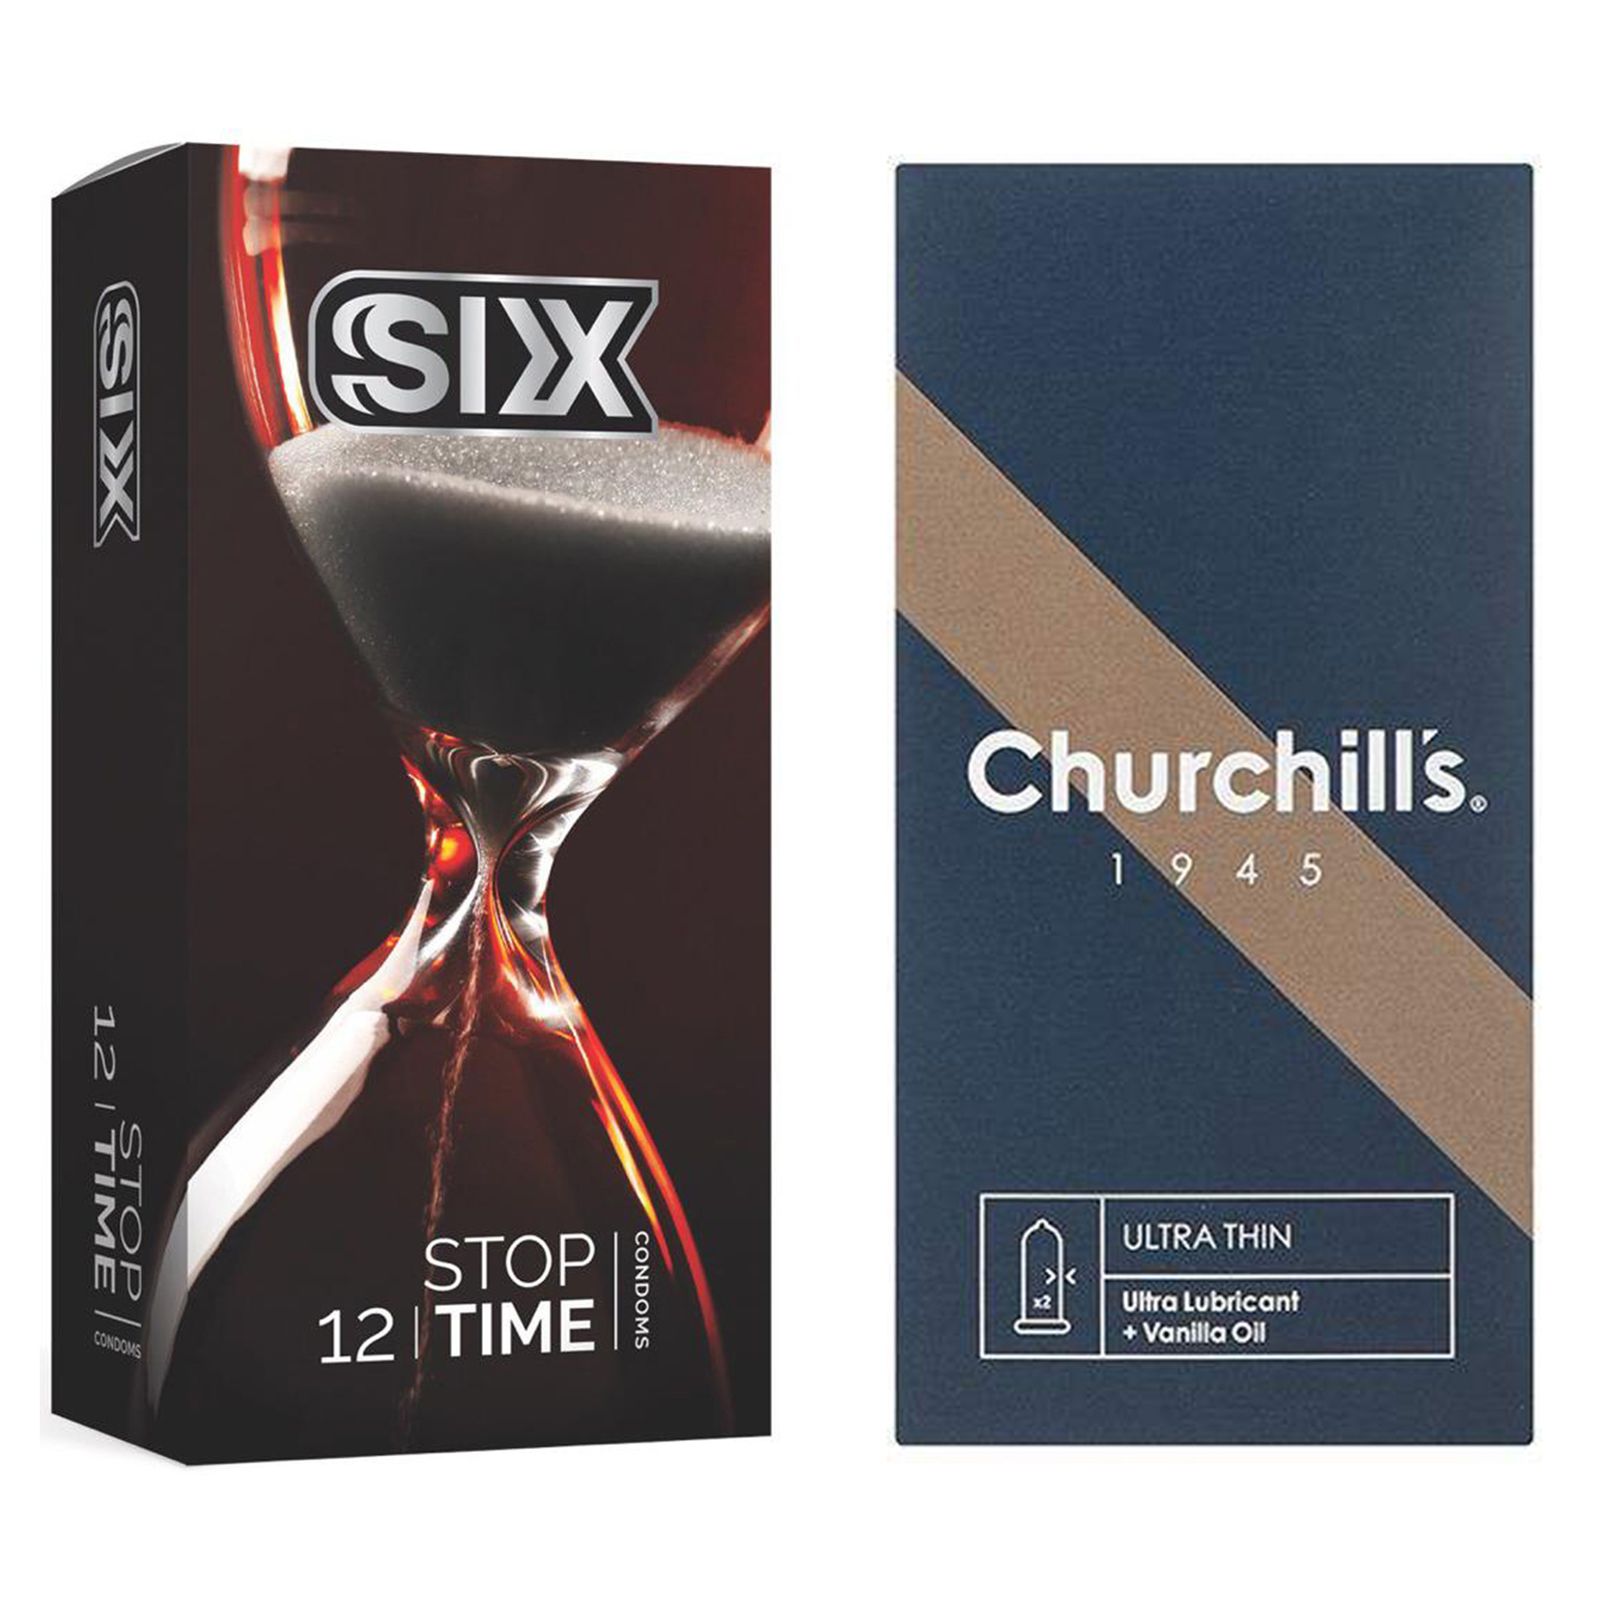 کاندوم چرچیلز مدل Ultra Thin بسته 12 عددی به همراه کاندوم سیکس مدل کلاسیک تاخیری بسته 12 عددی  -  - 2